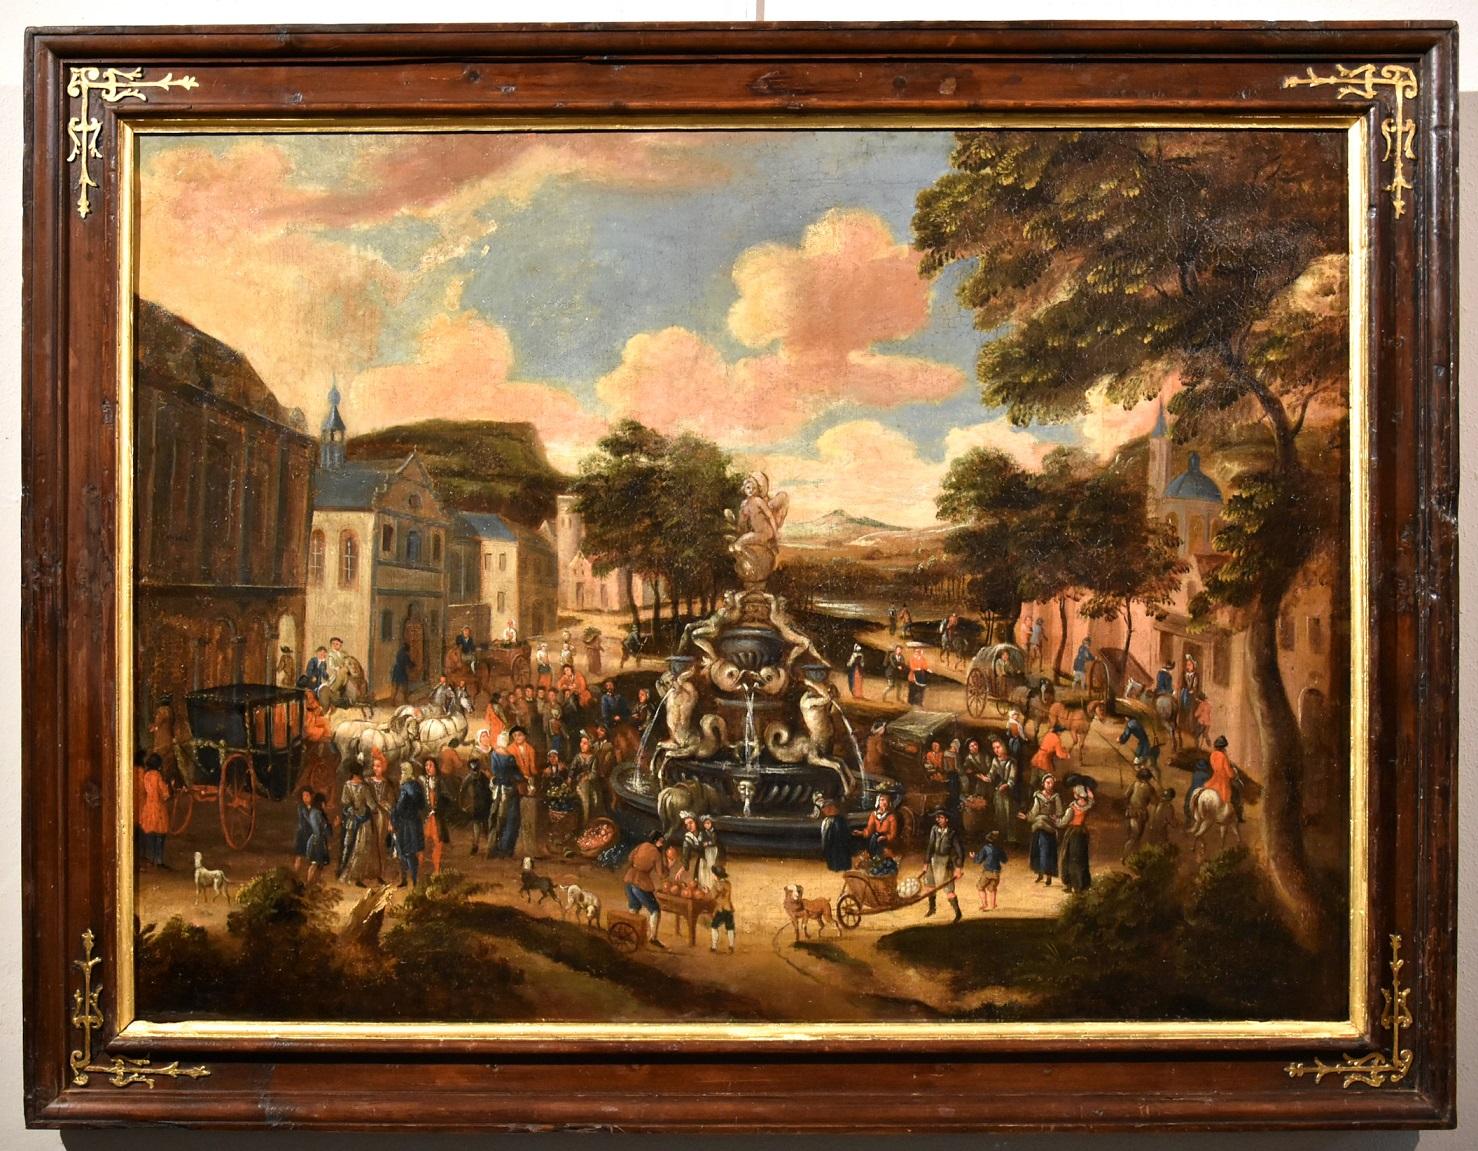 Circle of Pieter van Bredael (Antwerp 1629 - 1719) Landscape Painting – Landschaft, Dorfmarkt, Gemälde Öl auf Leinwand, Alter Meister, flämische Kunst, 18. Jahrhundert